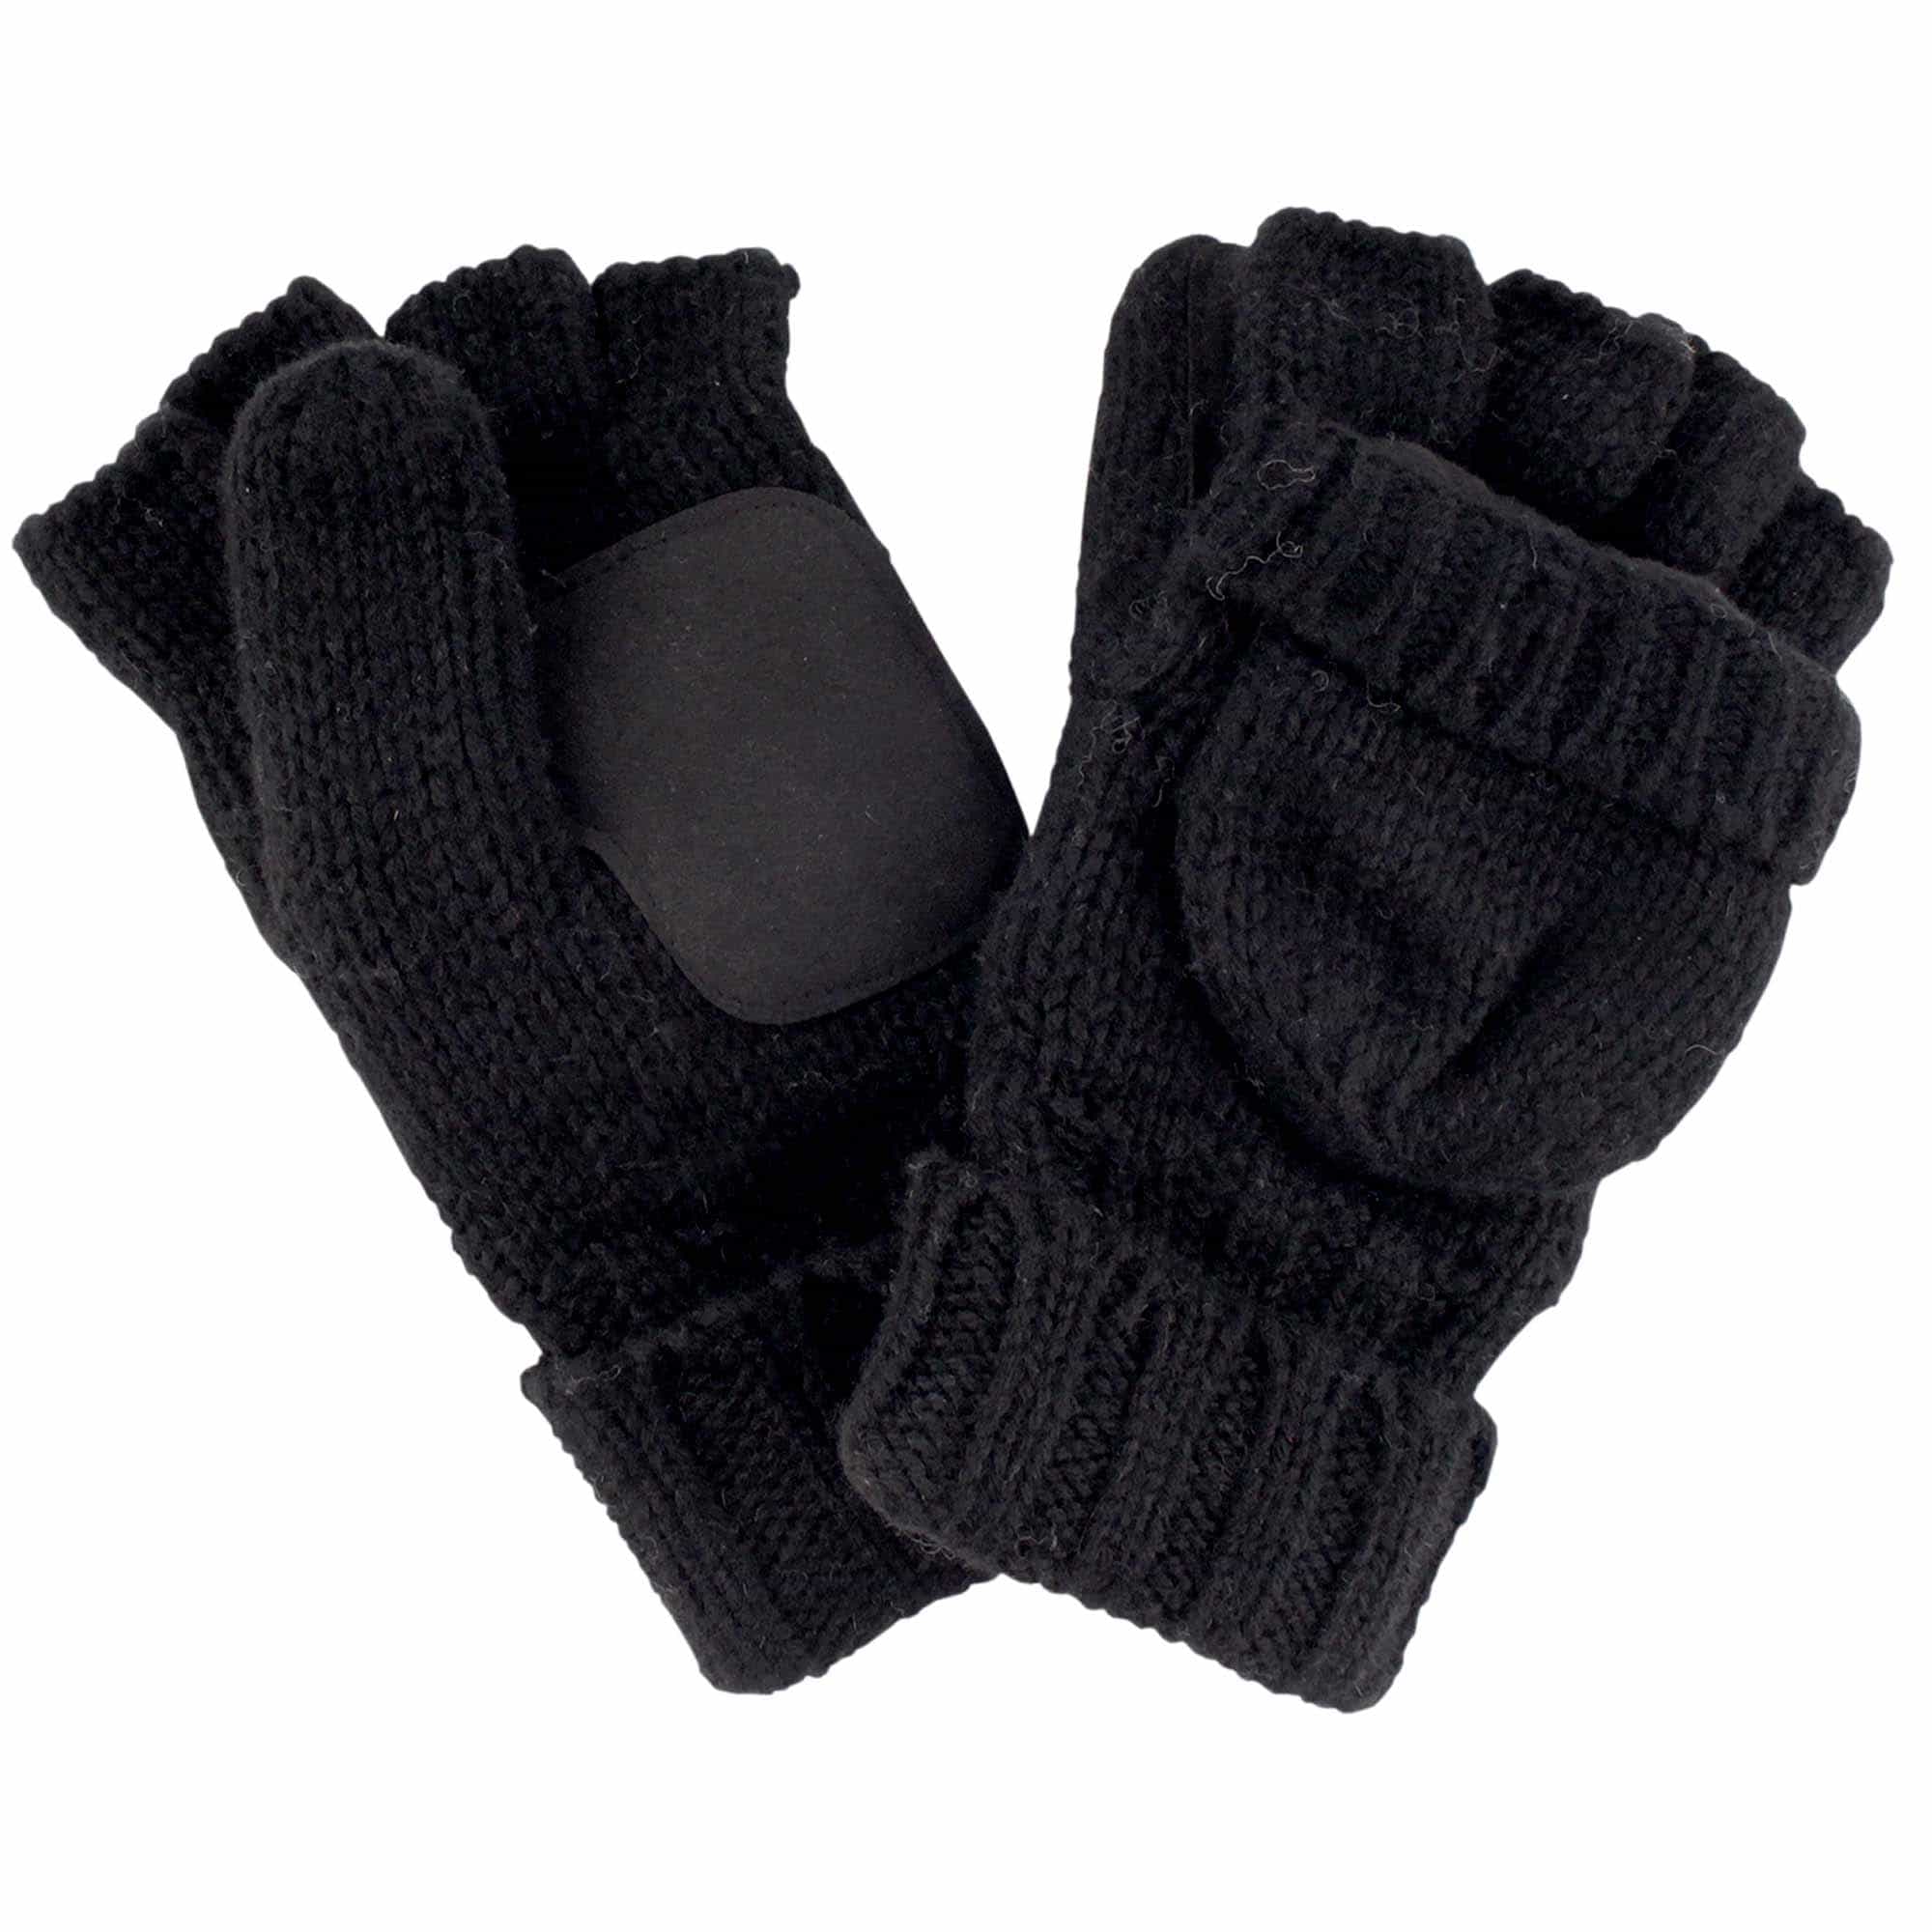 Knitted Winter Mittens Fingerless Convertible Half Glove Combo